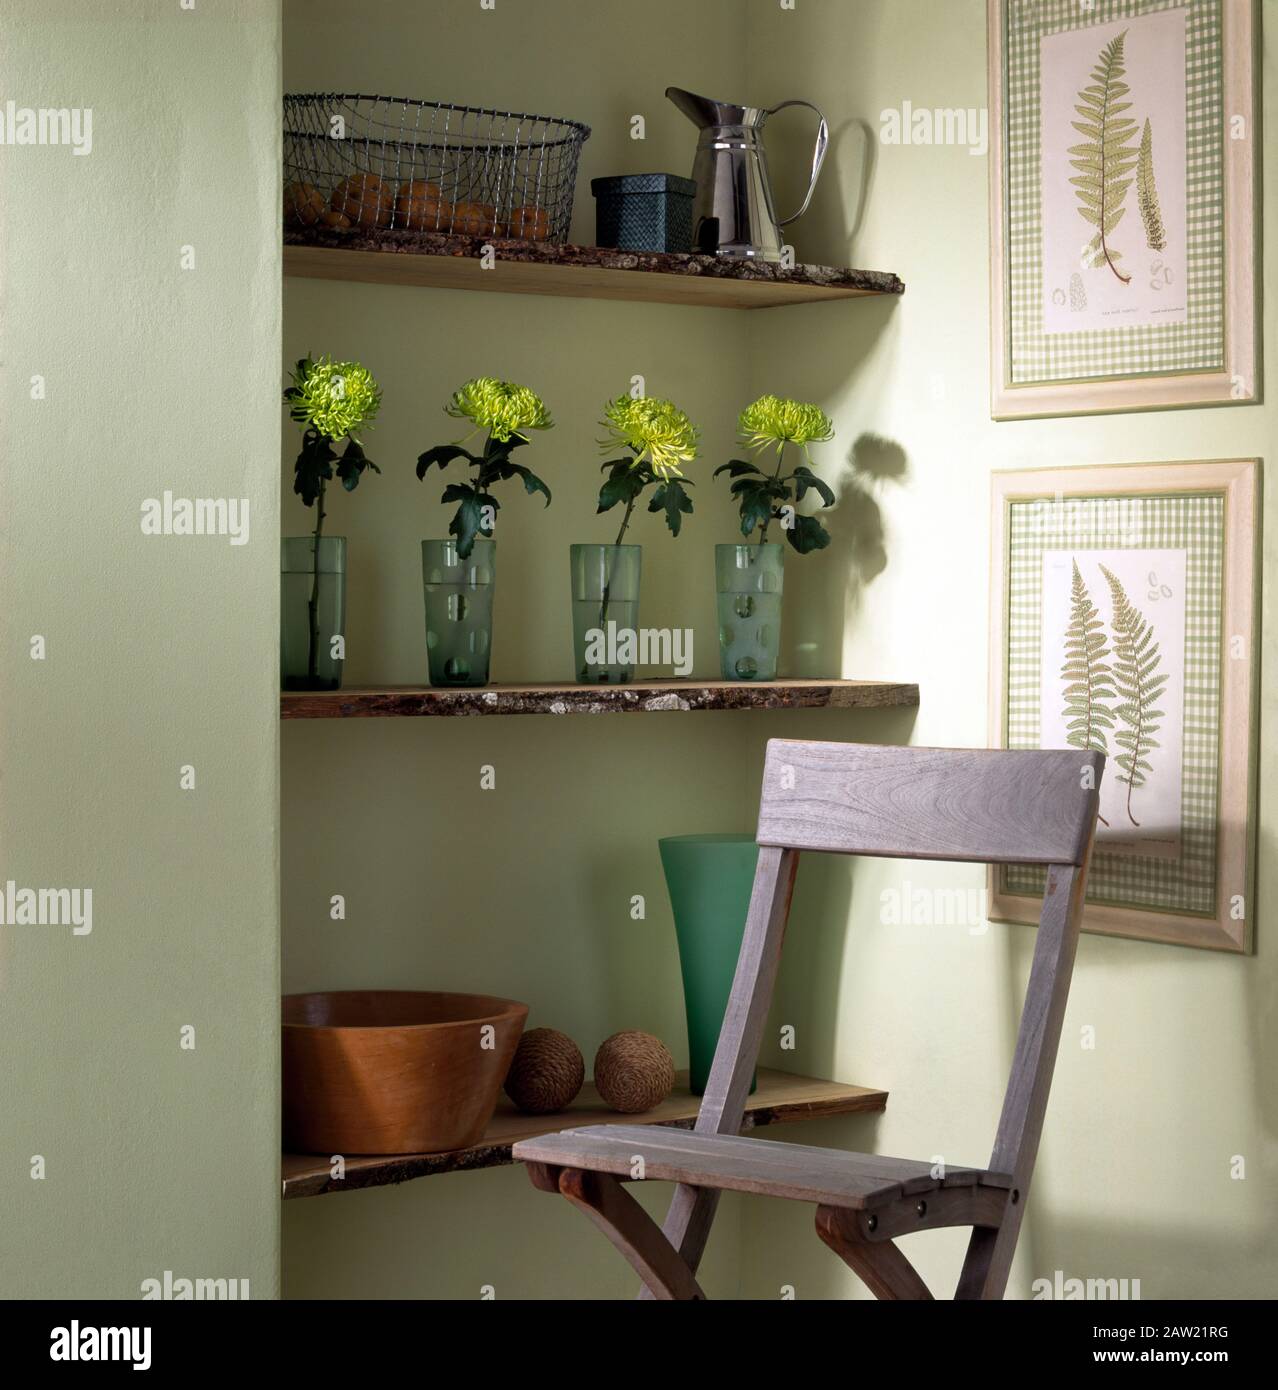 Lavé Lime chaise en bois en face de l'alcôve simple étagères avec chrysanthèmes vert dans une rangée de vases de verre Banque D'Images